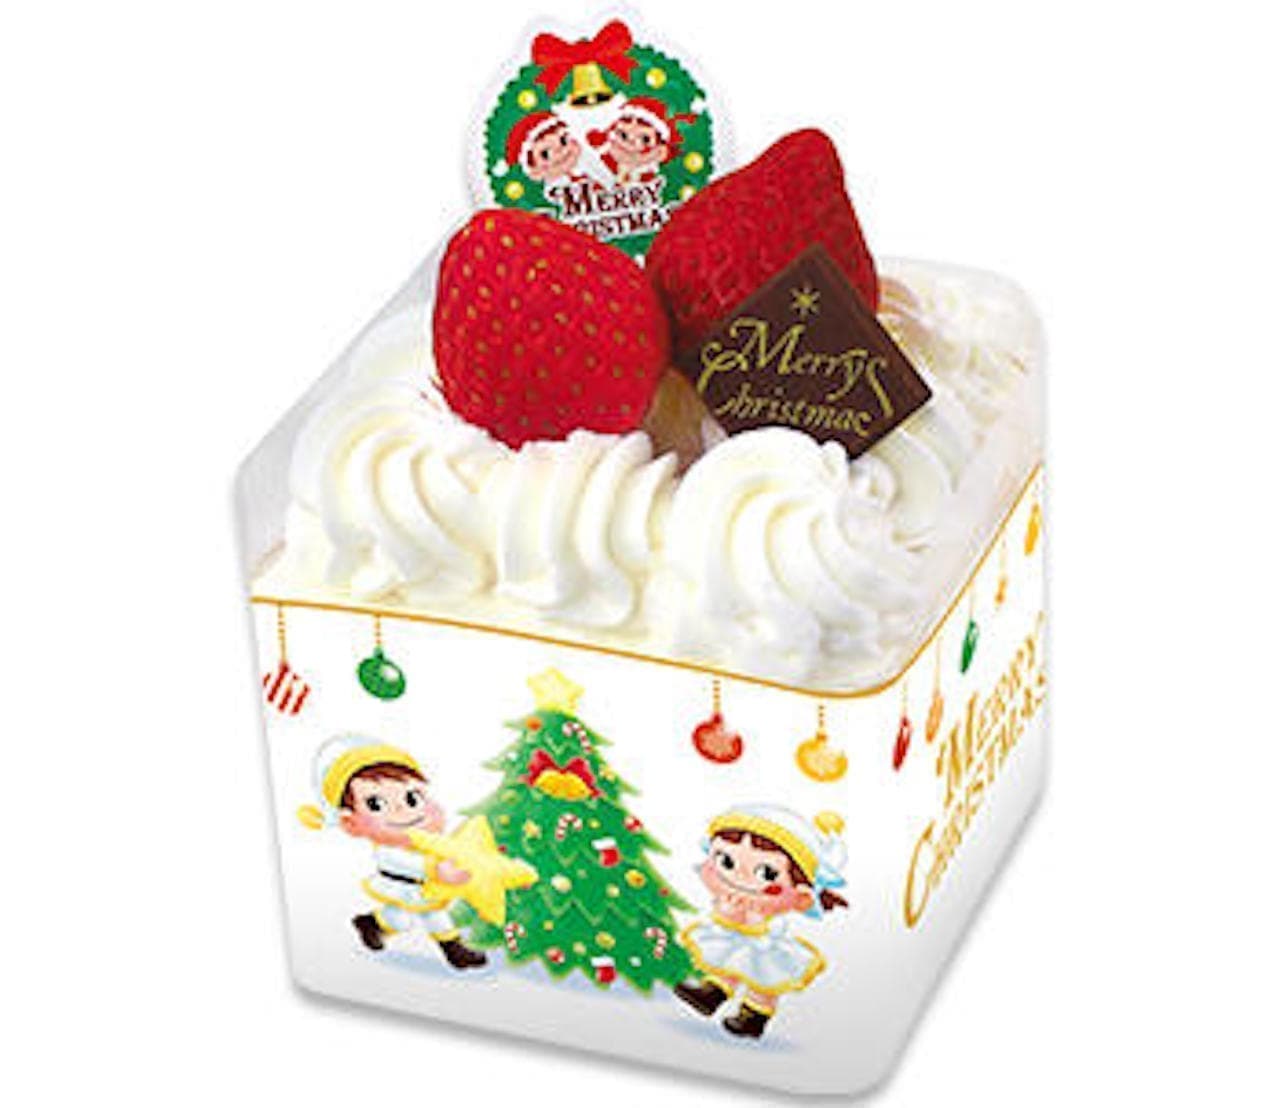 不二家のミニクリスマスケーキ7品をまとめてチェック クリスマス雪だるまケーキ や クリスマスリースシフォン など えん食べ